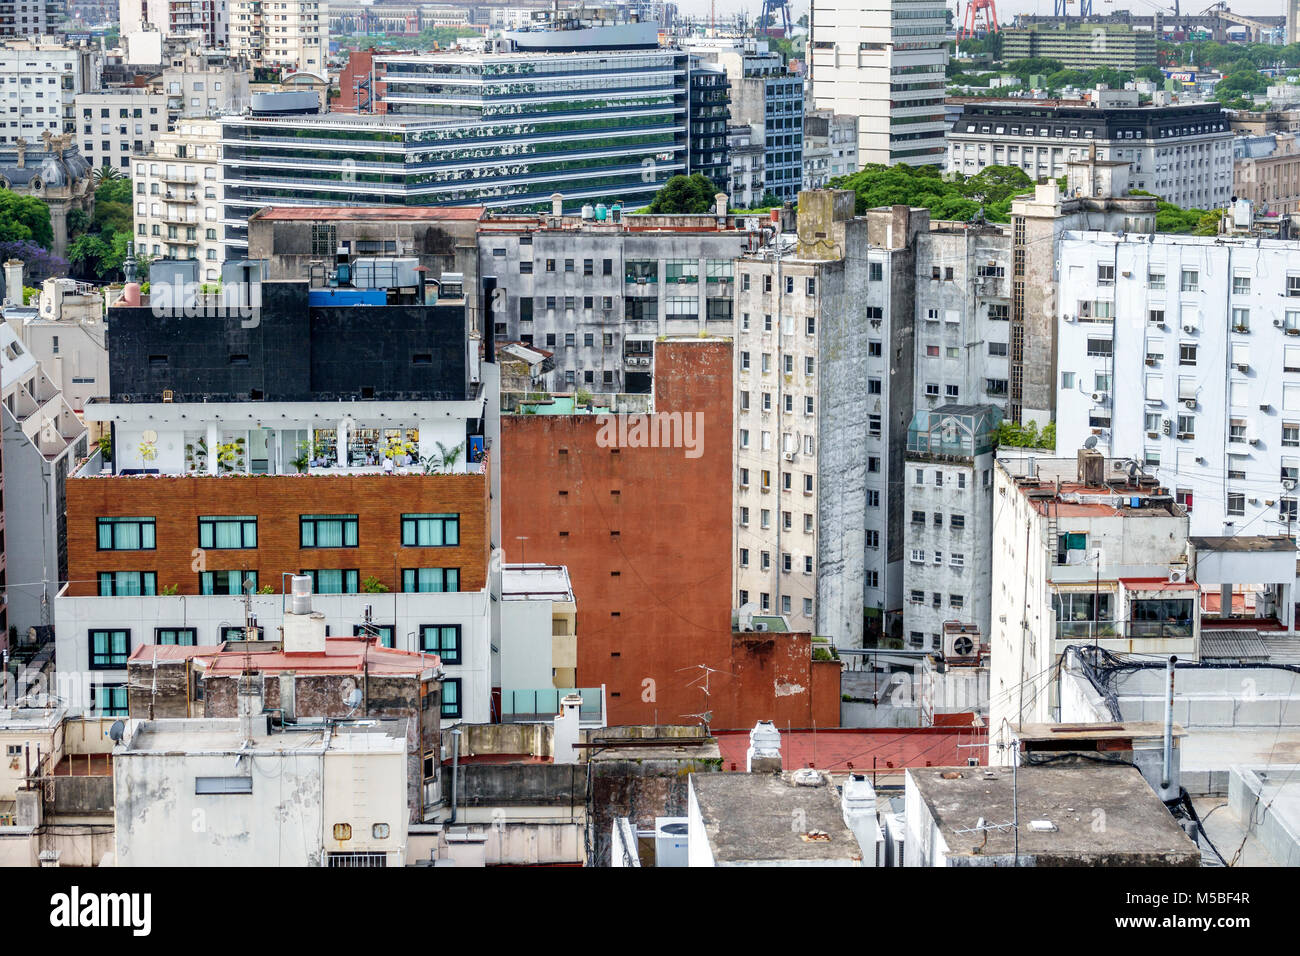 Buenos Aires Argentina,Monserrat,horizonte urbano,edificios residenciales de apartamentos,tejados,vista aérea,ARG171125202 Foto de stock